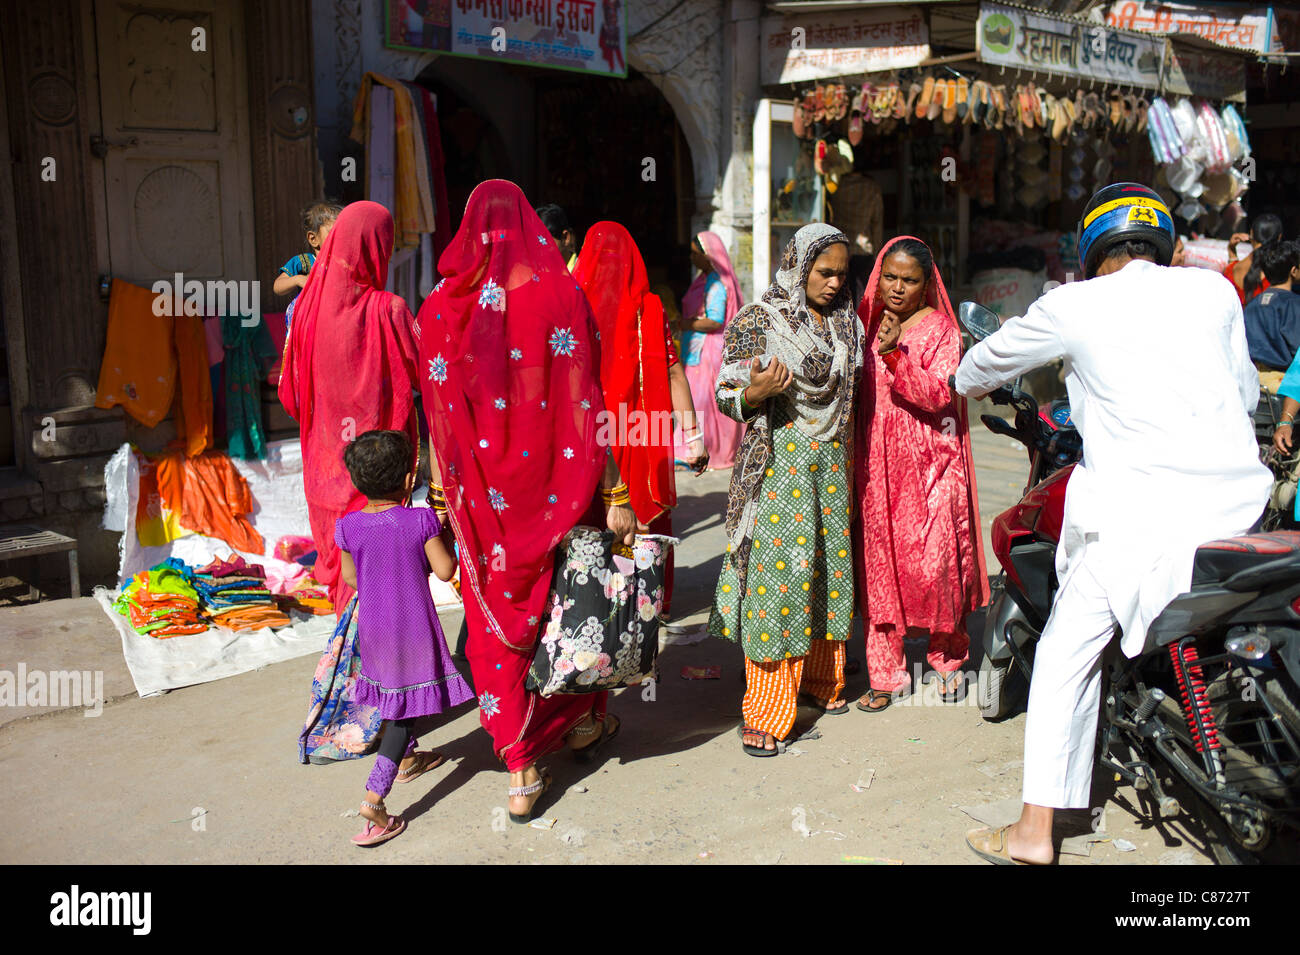 Indian women shopping, street scene at Tambaku Bazar in Jodhpur Old Town, Rajasthan, Northern India Stock Photo